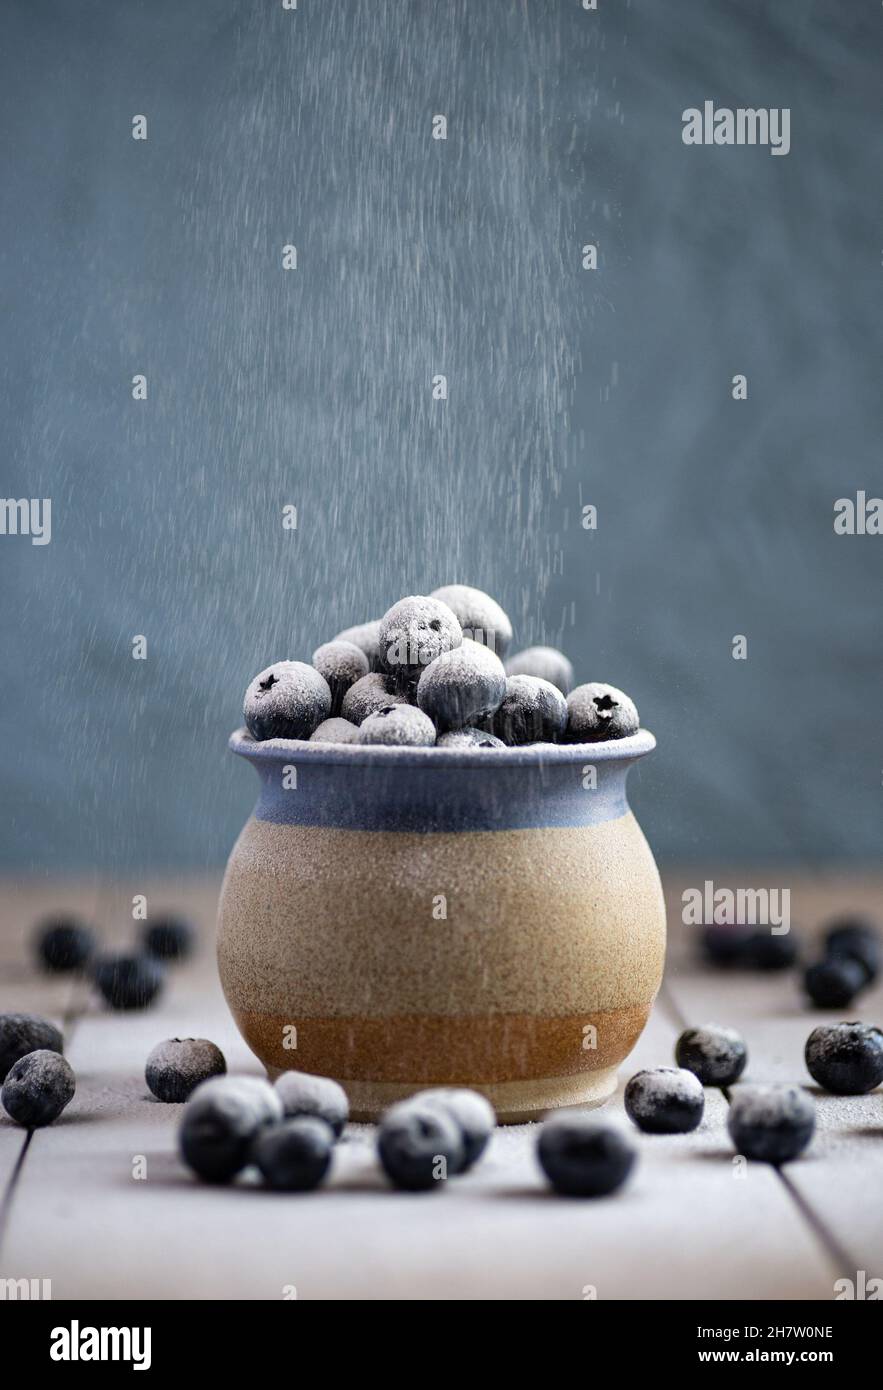 Une tasse en grès remplie de bleuets sur une surface en céramique.Poudre à épousseter tamisée sur les baies Banque D'Images